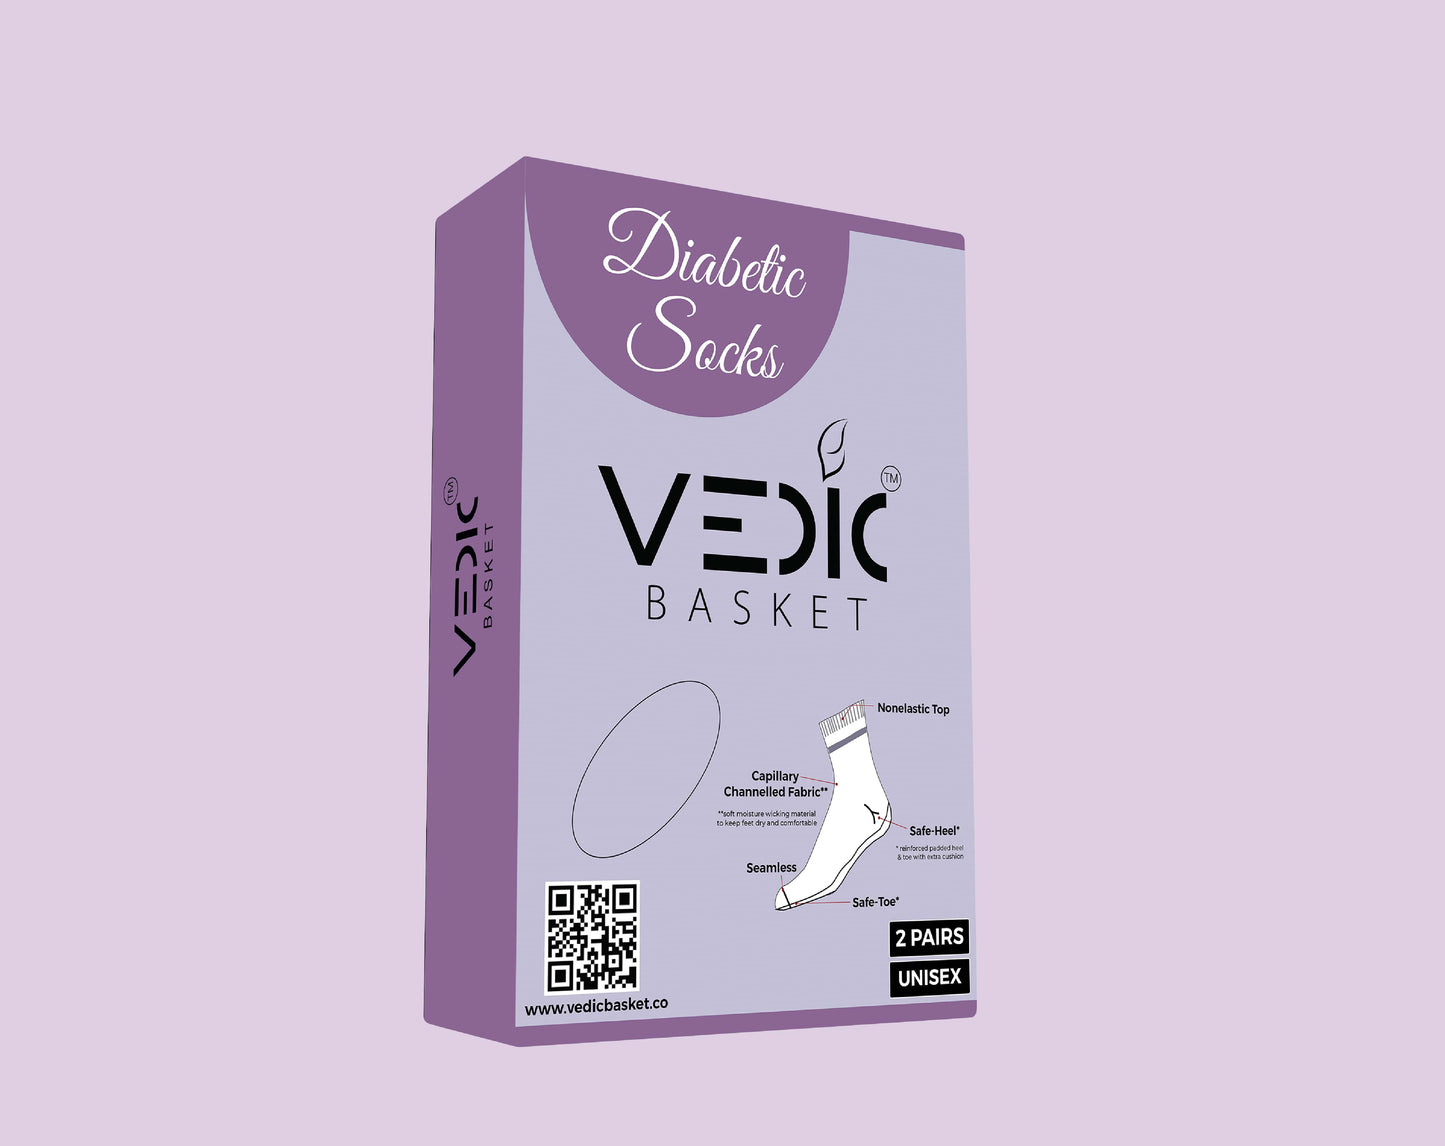 Diabetic Socks For men and women